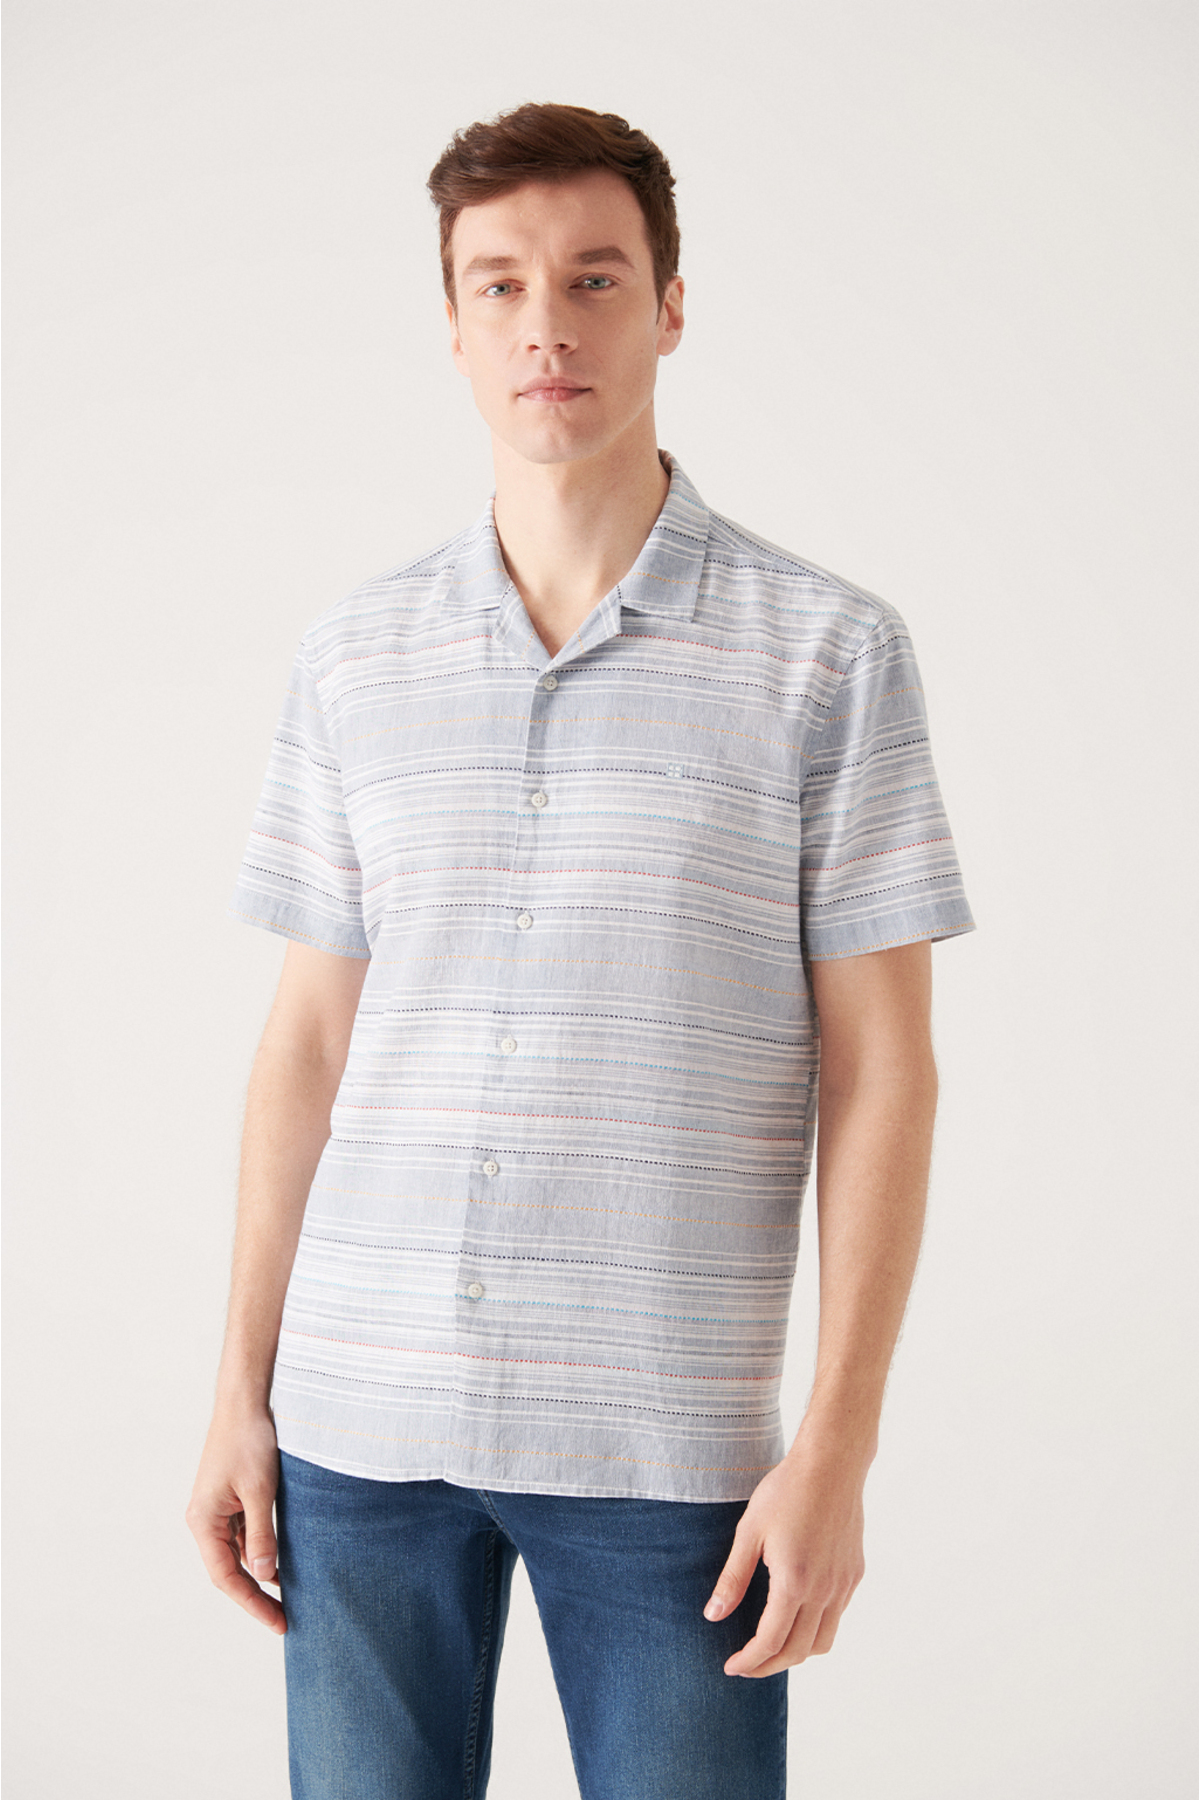 Avva Men's Blue Striped Cuban Collar Short Sleeve Shirt